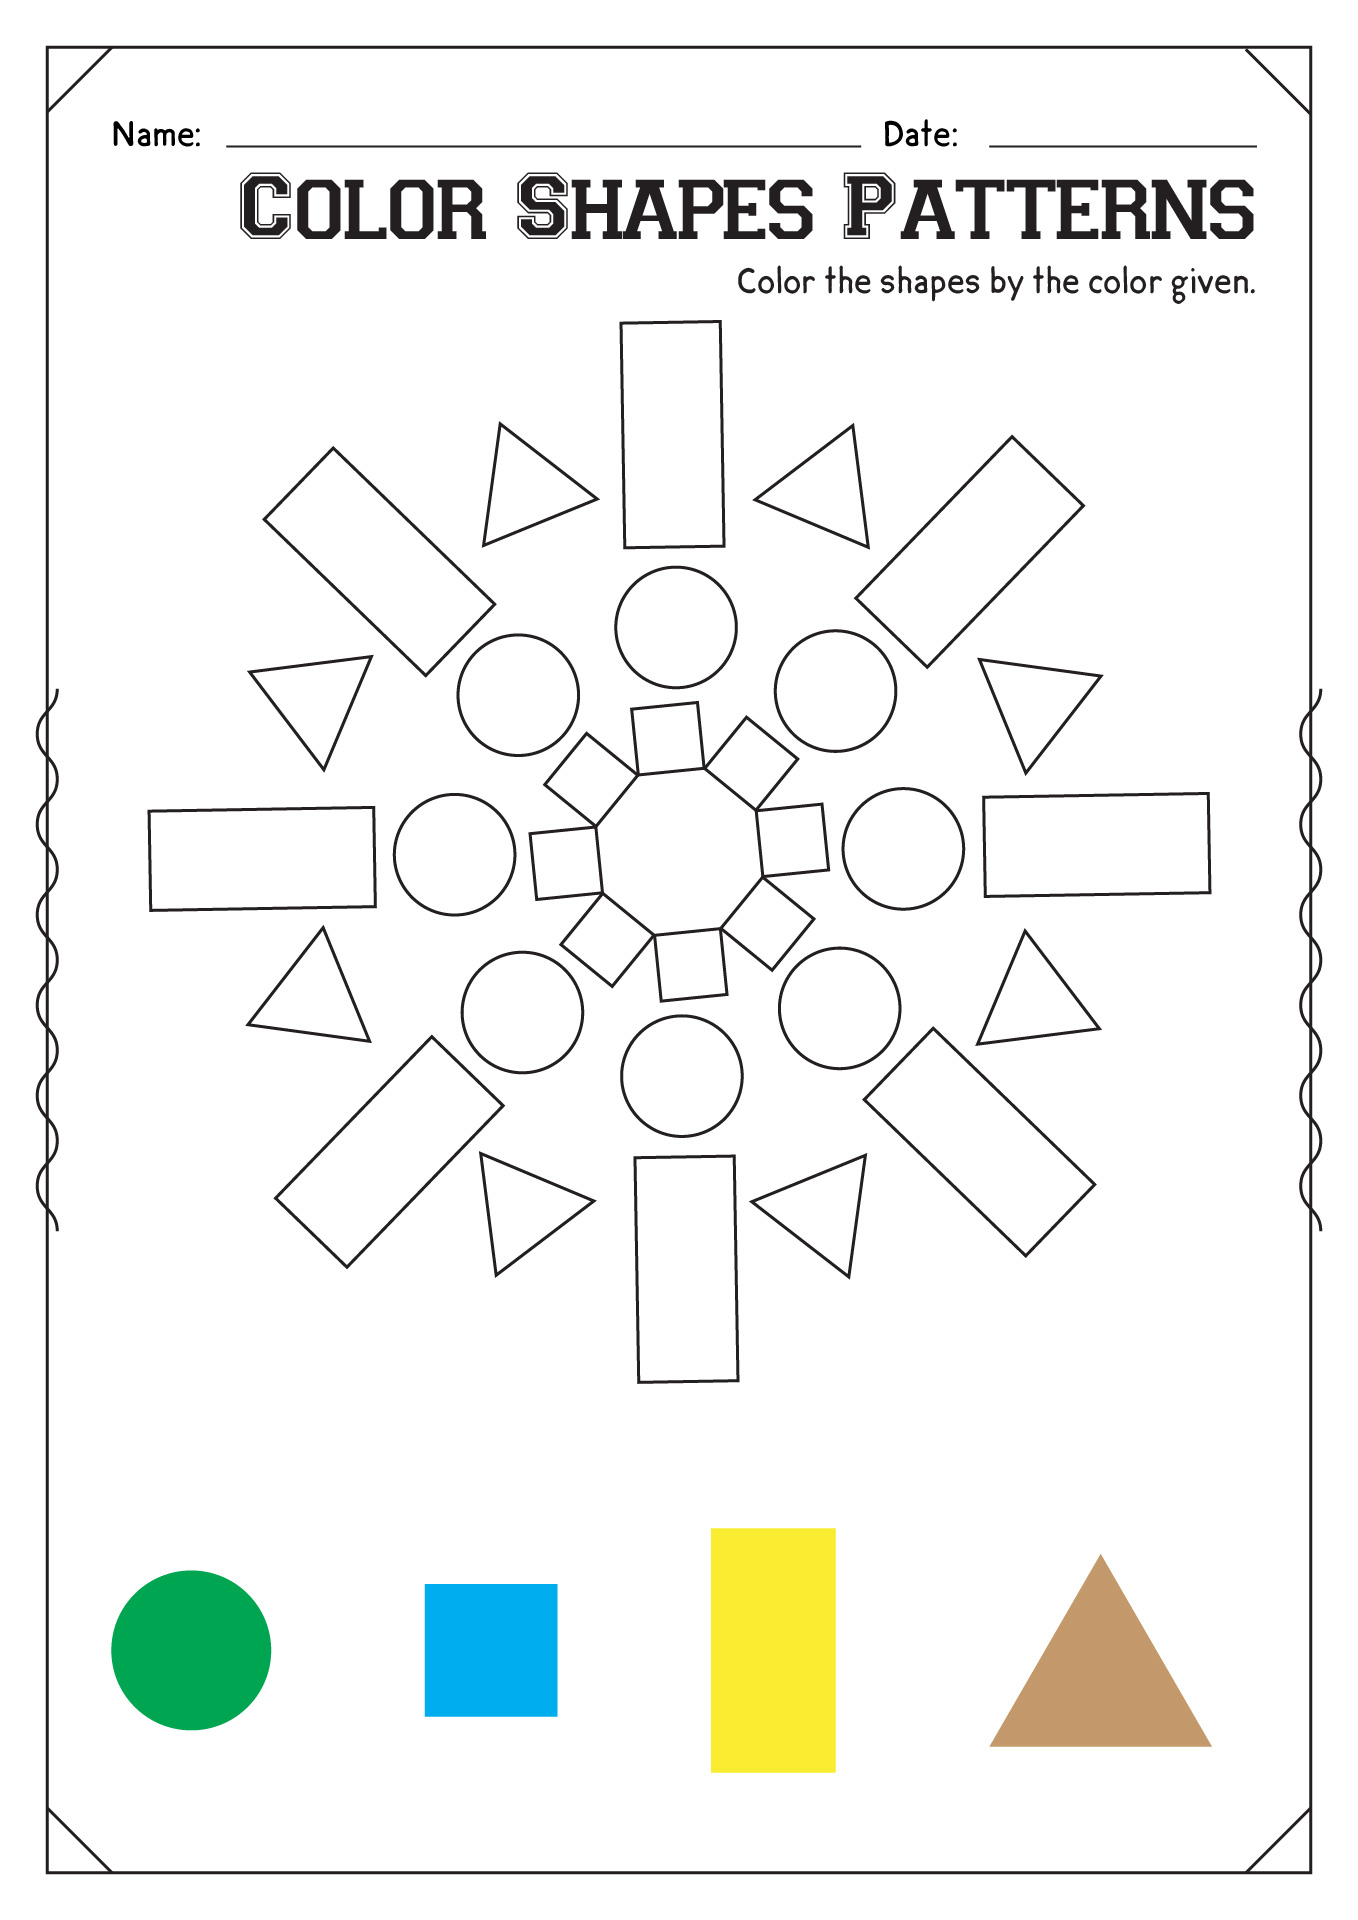 Color Shapes Patterns Worksheets Kindergarten Image